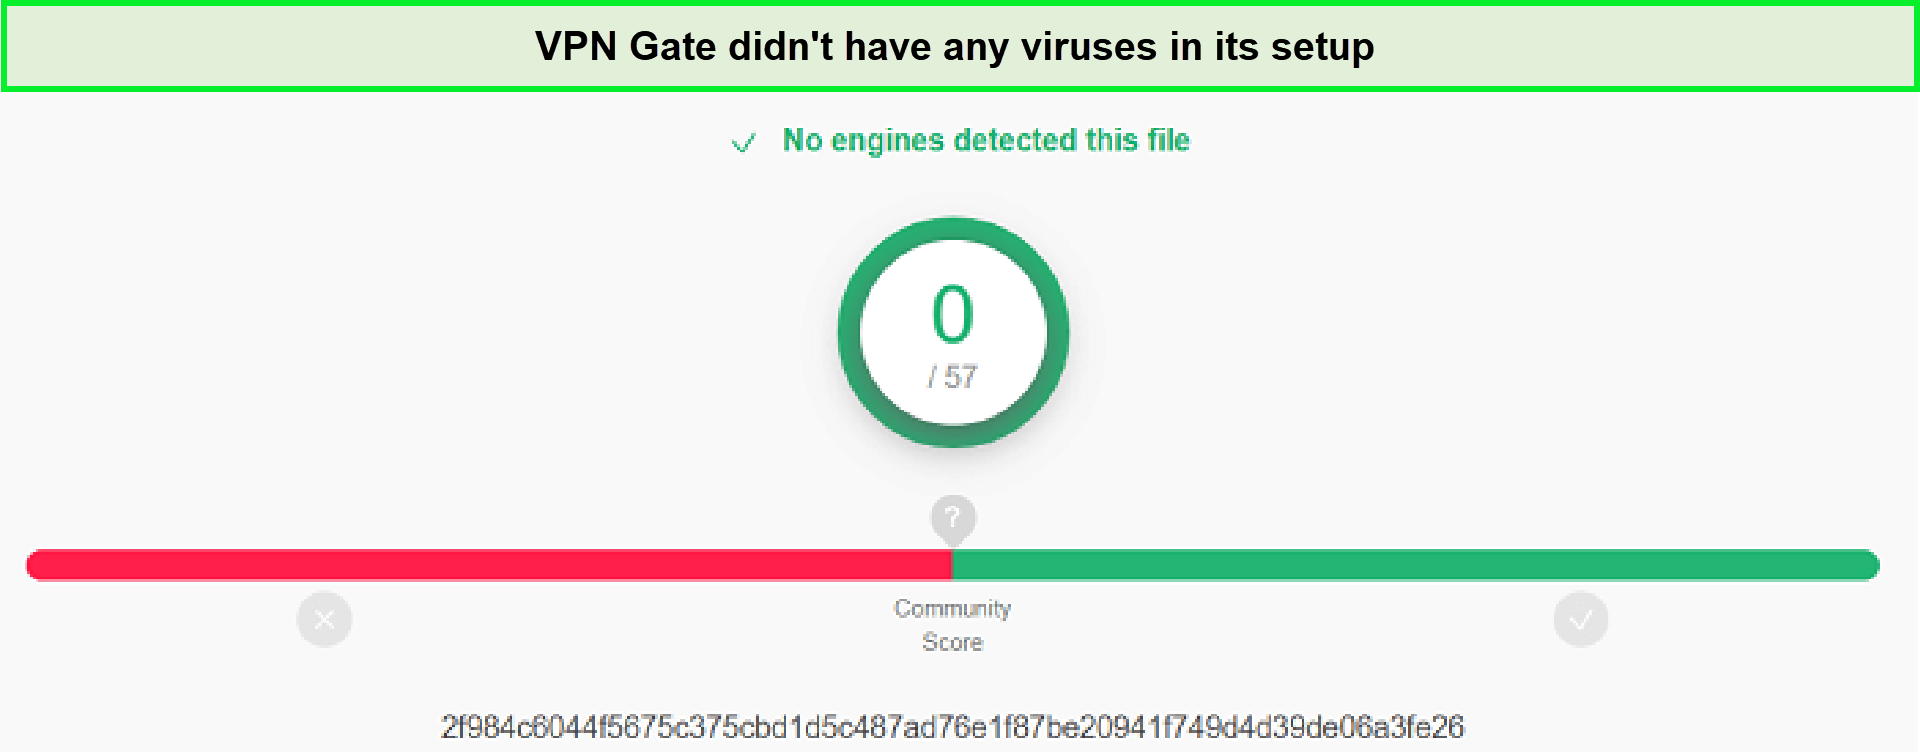 Virus-Test-in-Netherlands-VPN-Gate